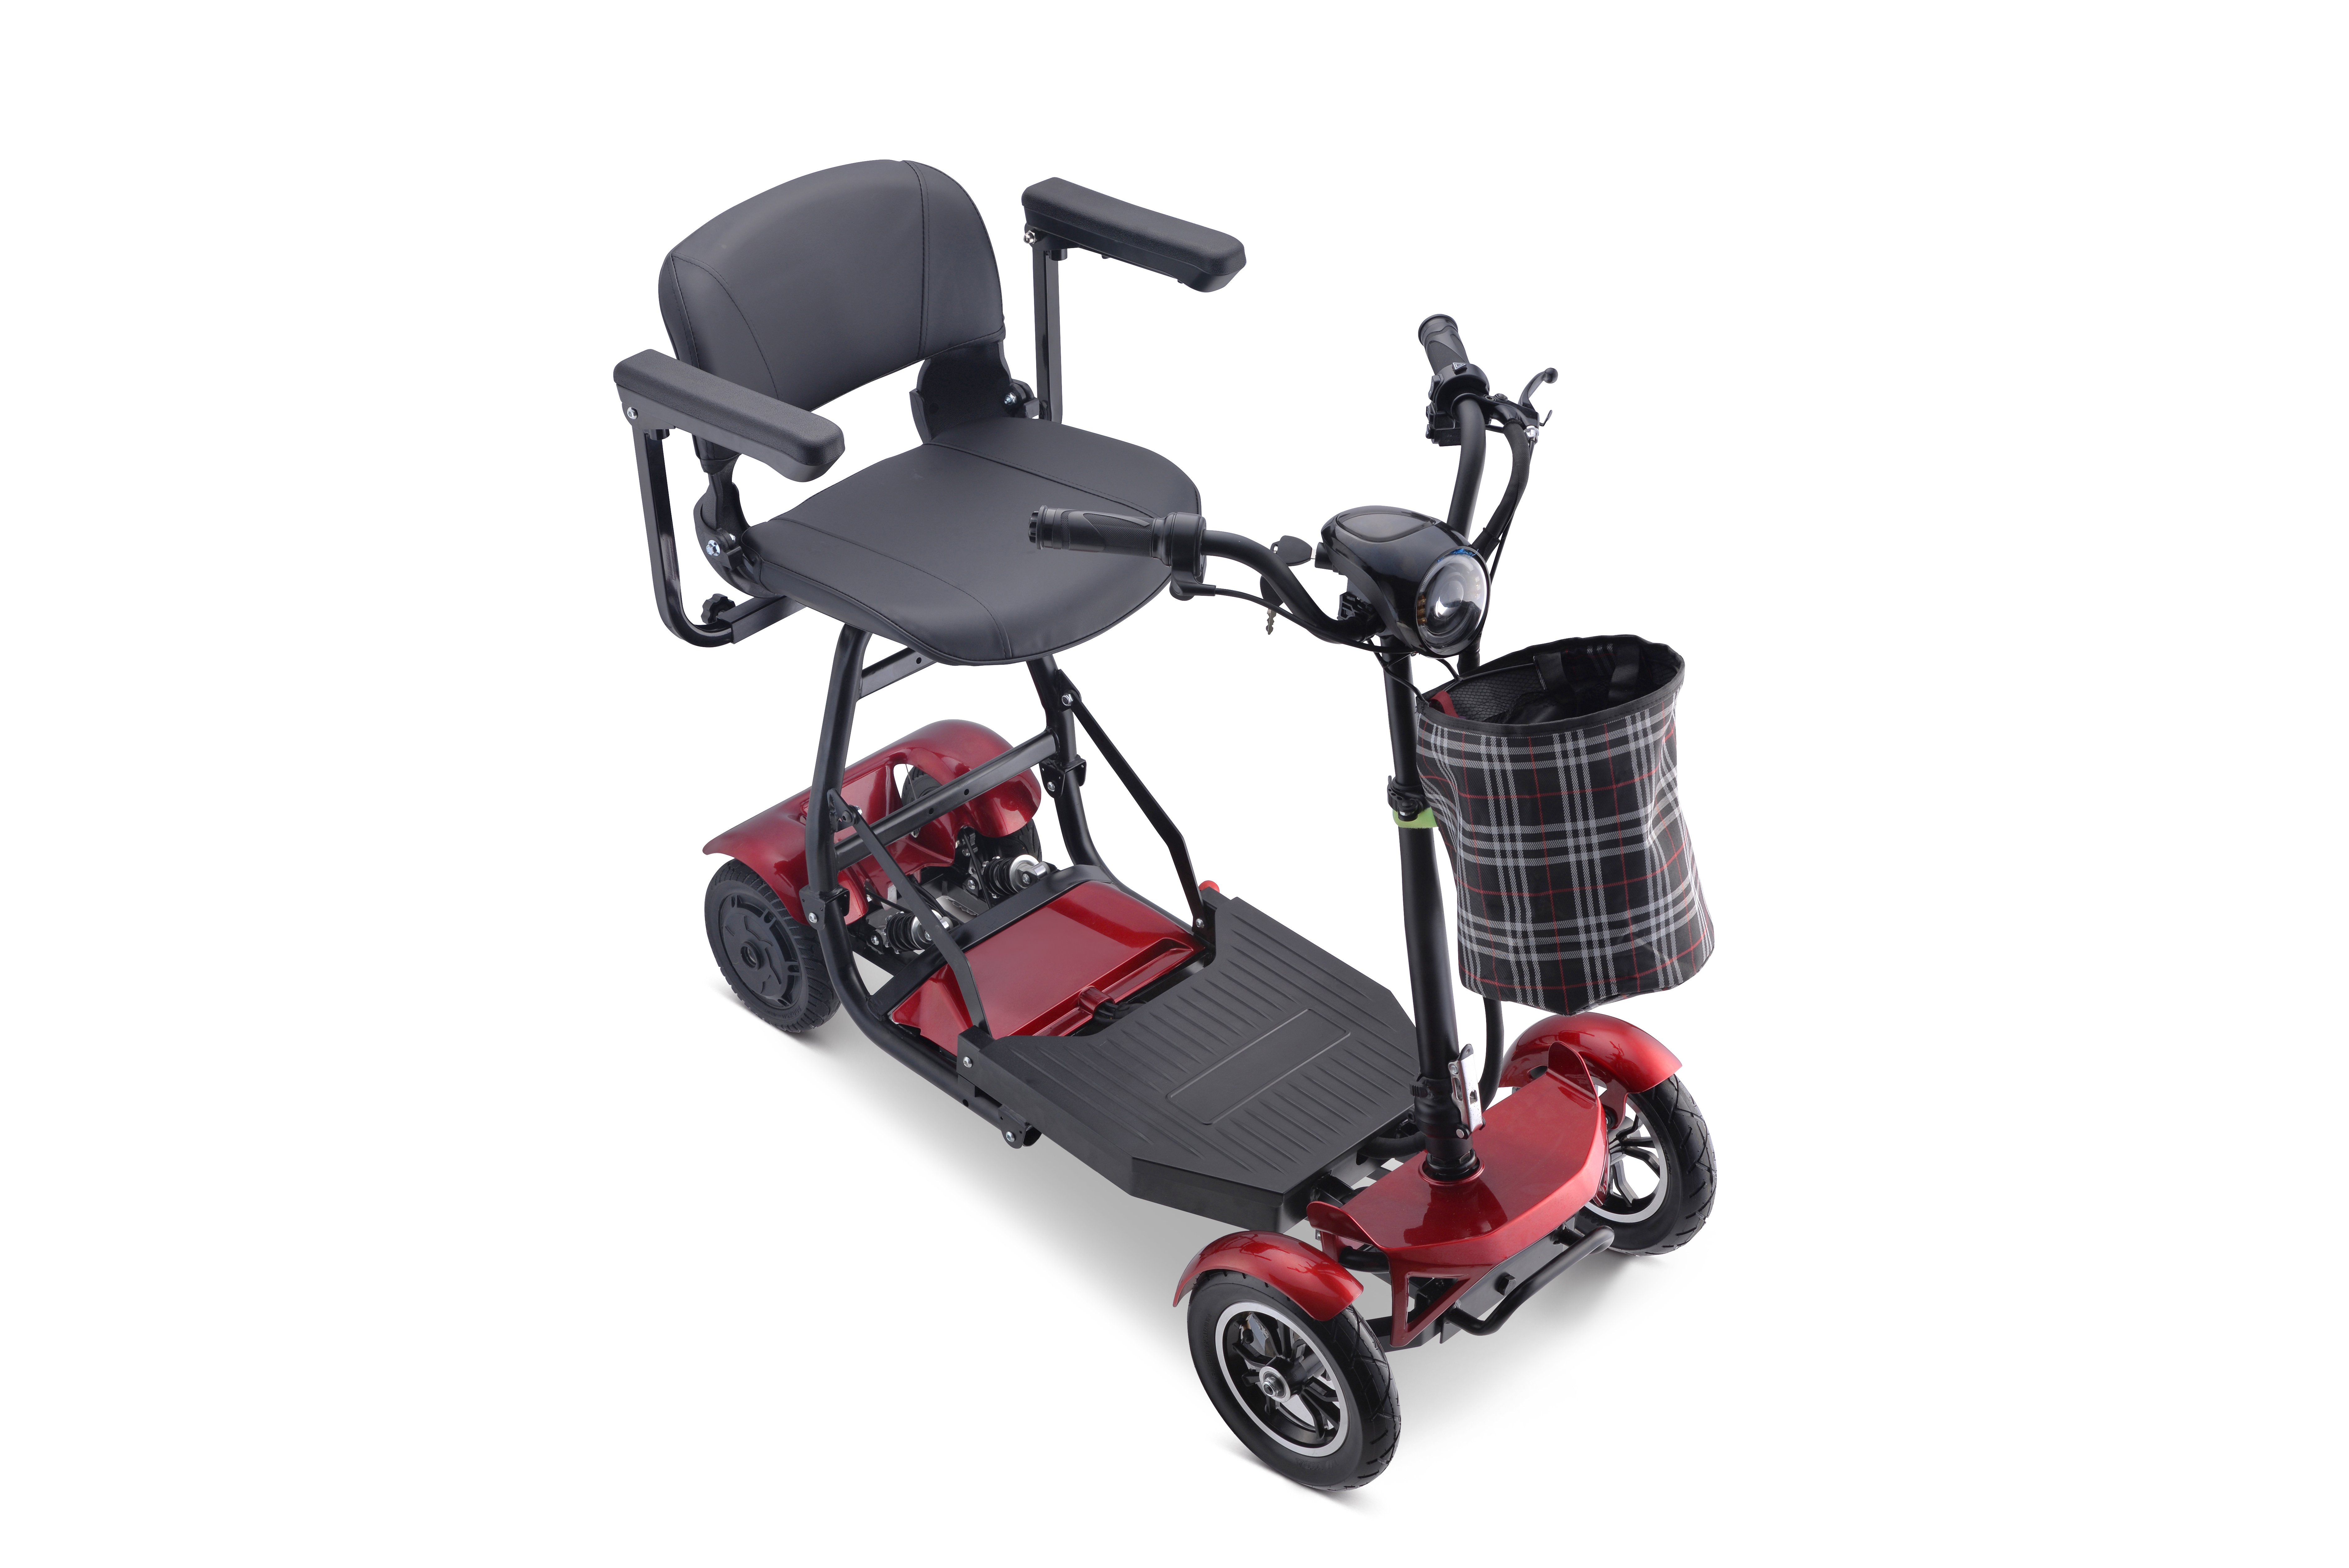 Baichen Quater 4 Elektroroller, Mobilitätsroller mit vier Rädern und Tachometer für Behinderte. Ausgewähltes Bild